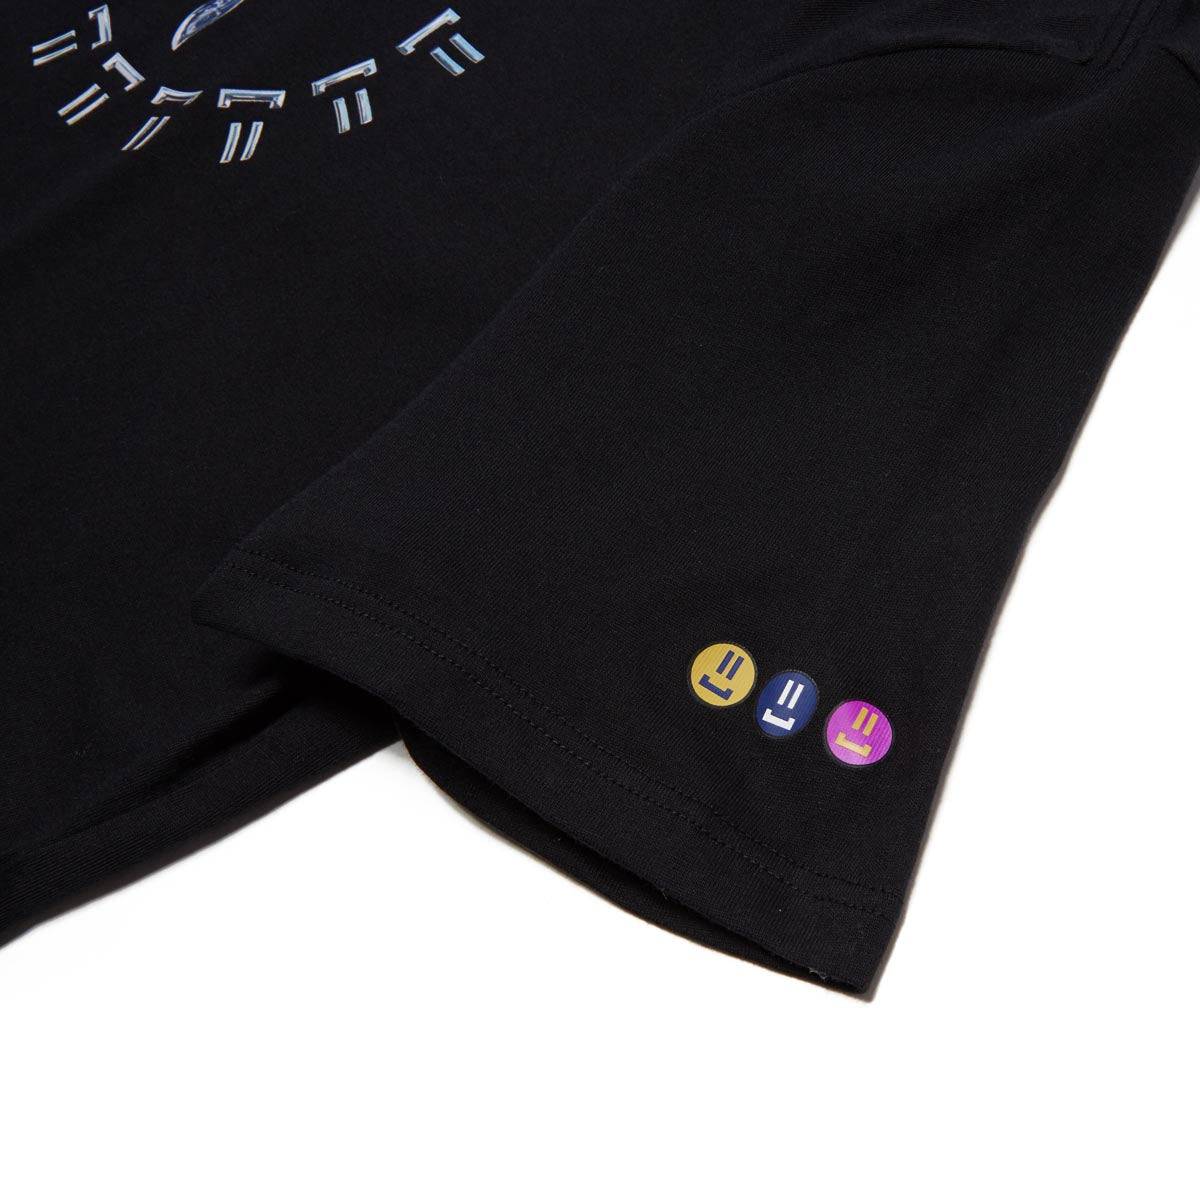 Nike SB Womens x Rayssa Leal Premium T-Shirt - Black image 3